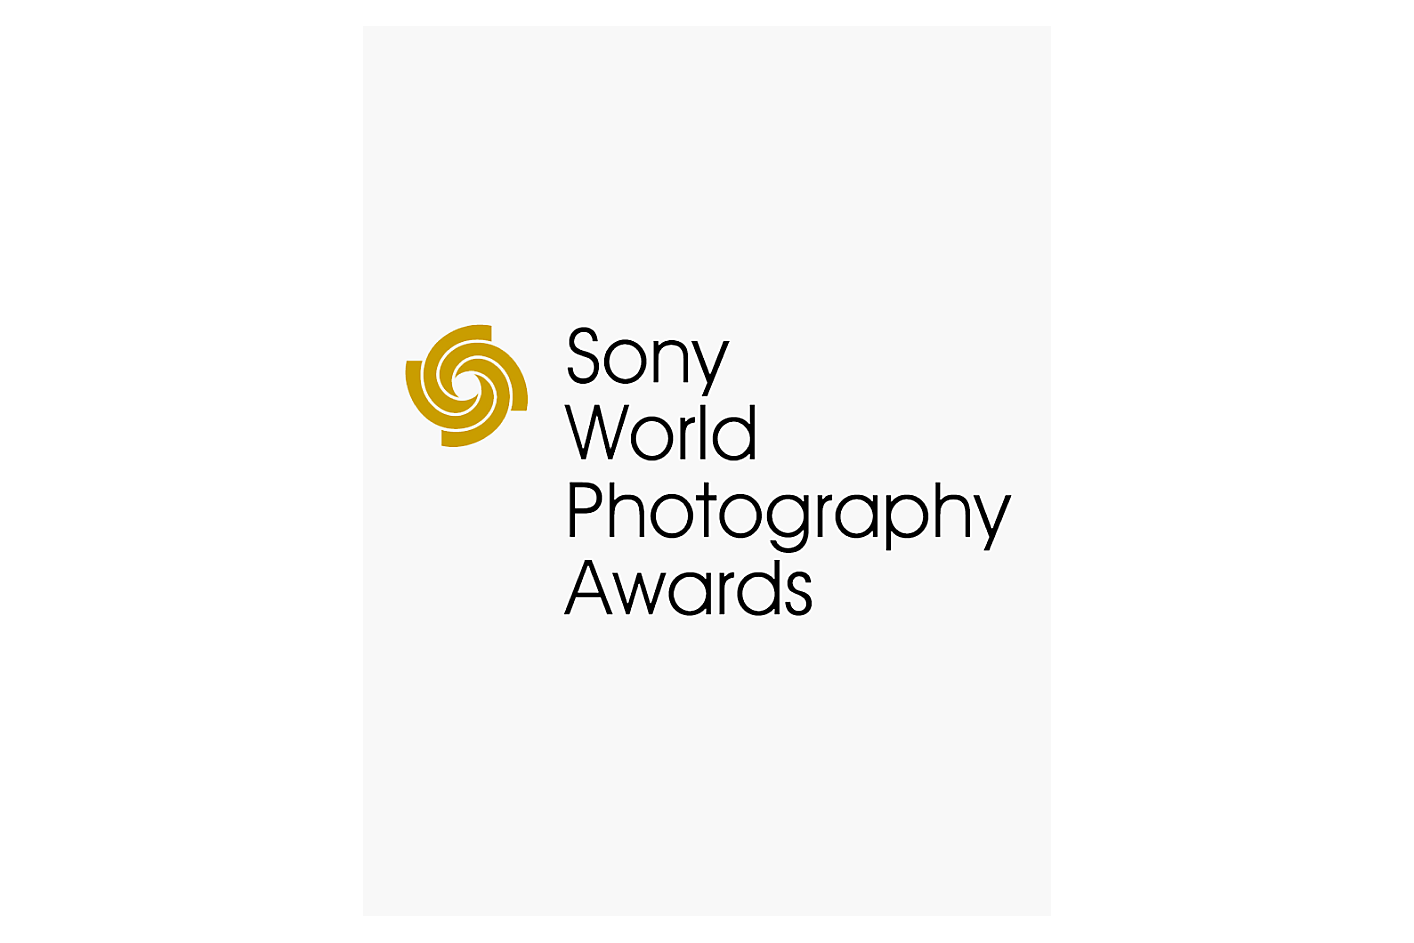 Λογότυπο των Παγκόσμιων βραβείων φωτογραφίας Sony